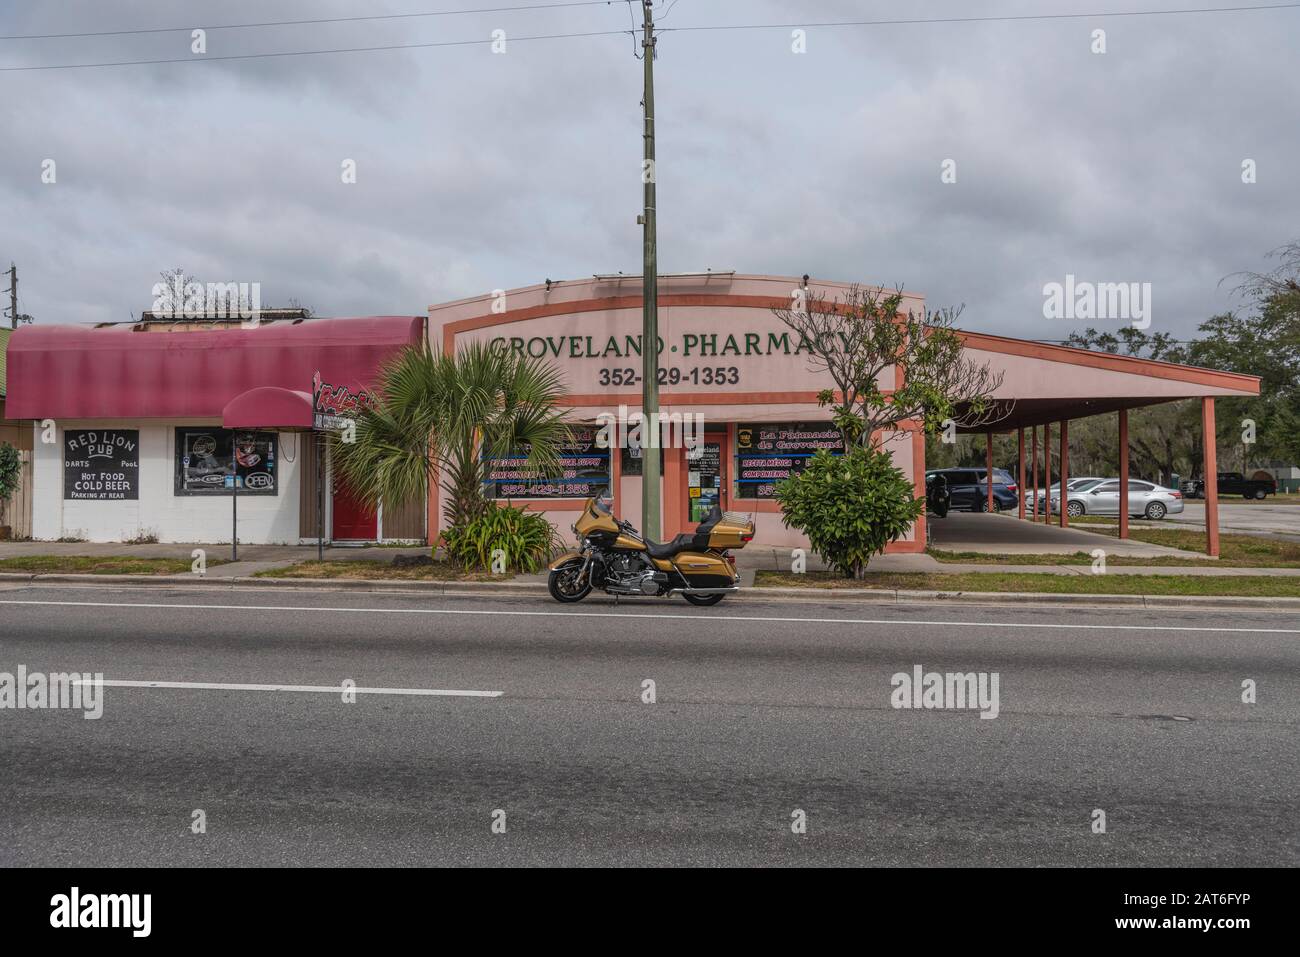 Groveland Pharmacy Storefront, Good Neighbor Pharmacy Groveland Florida USA Stock Photo